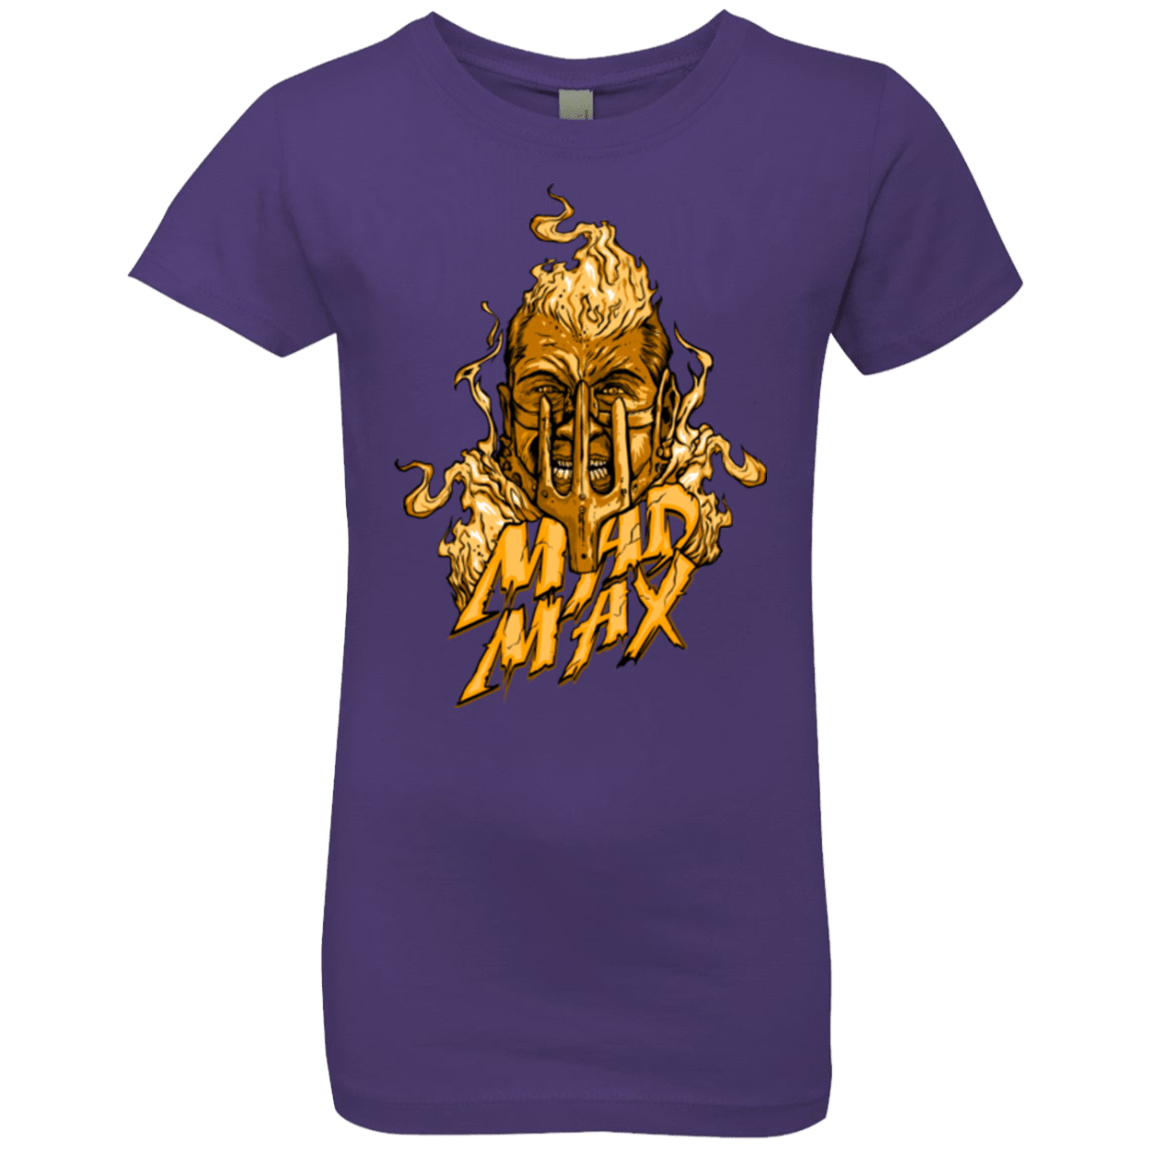 T-Shirts Purple Rush / YXS Mad Head Girls Premium T-Shirt